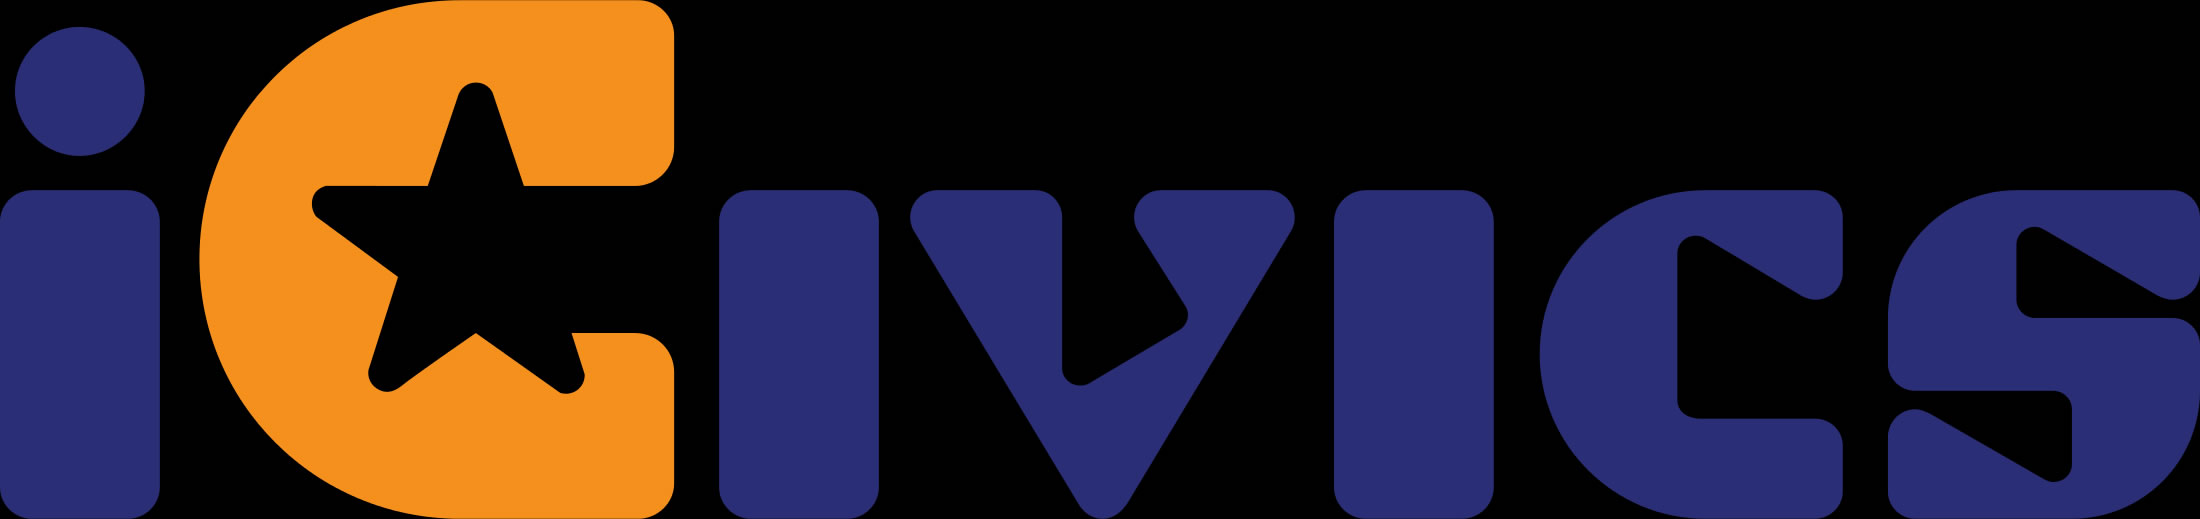 ICivics logo image